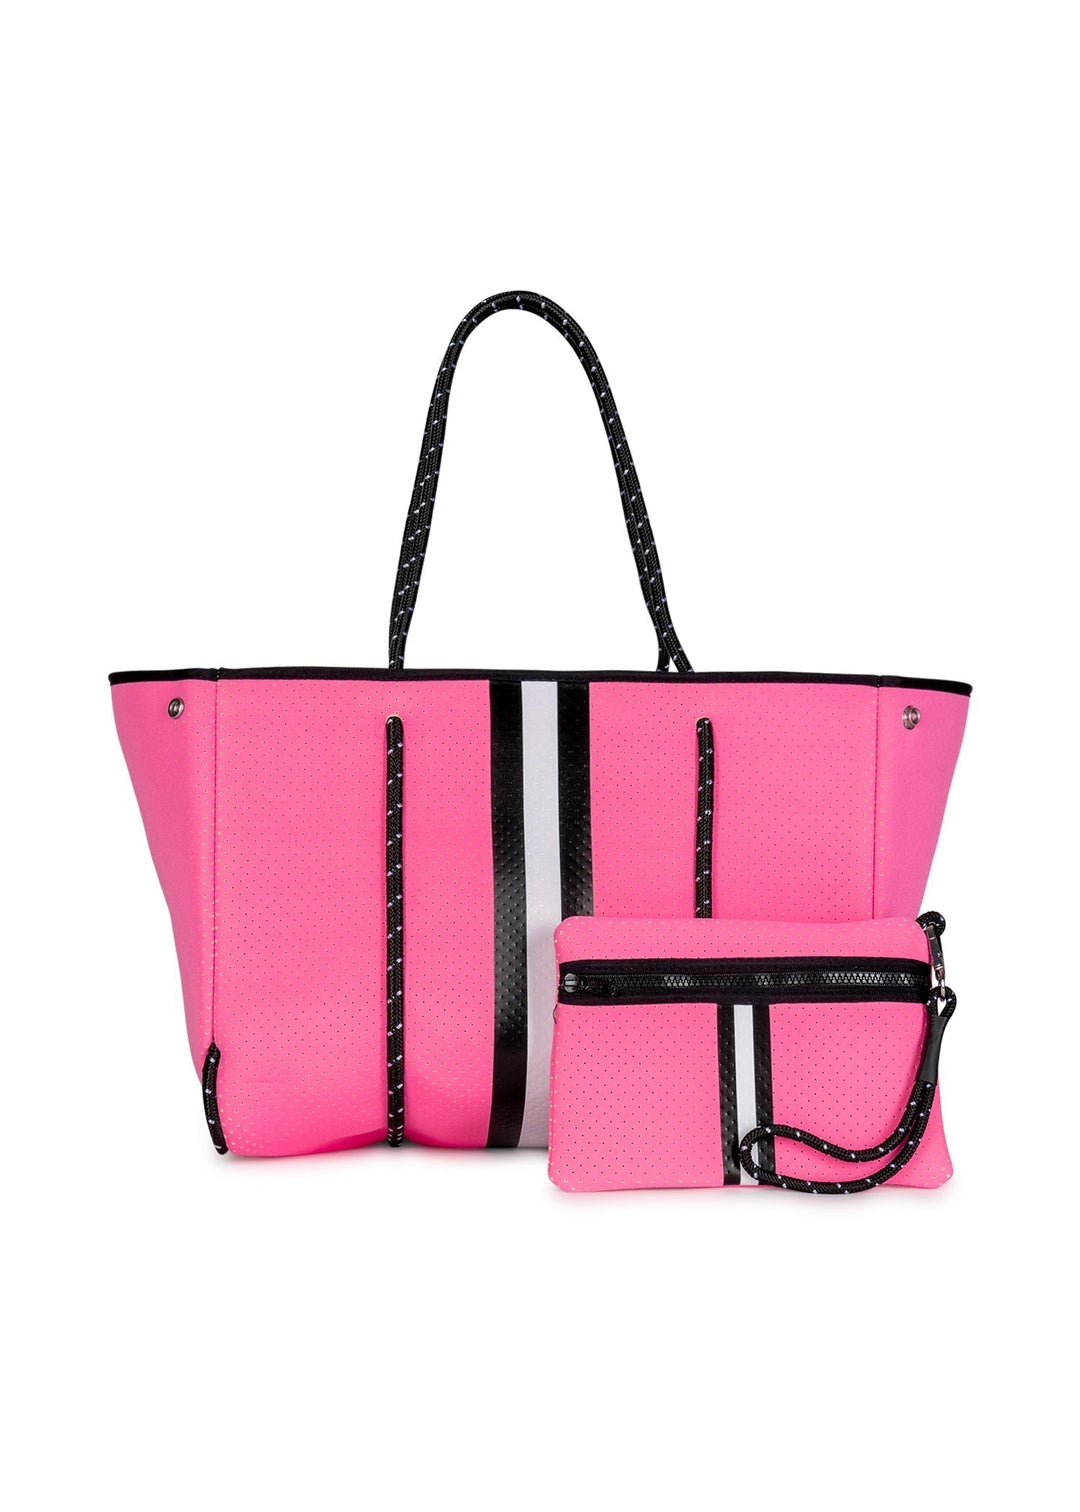 victoria secret pink tote bag